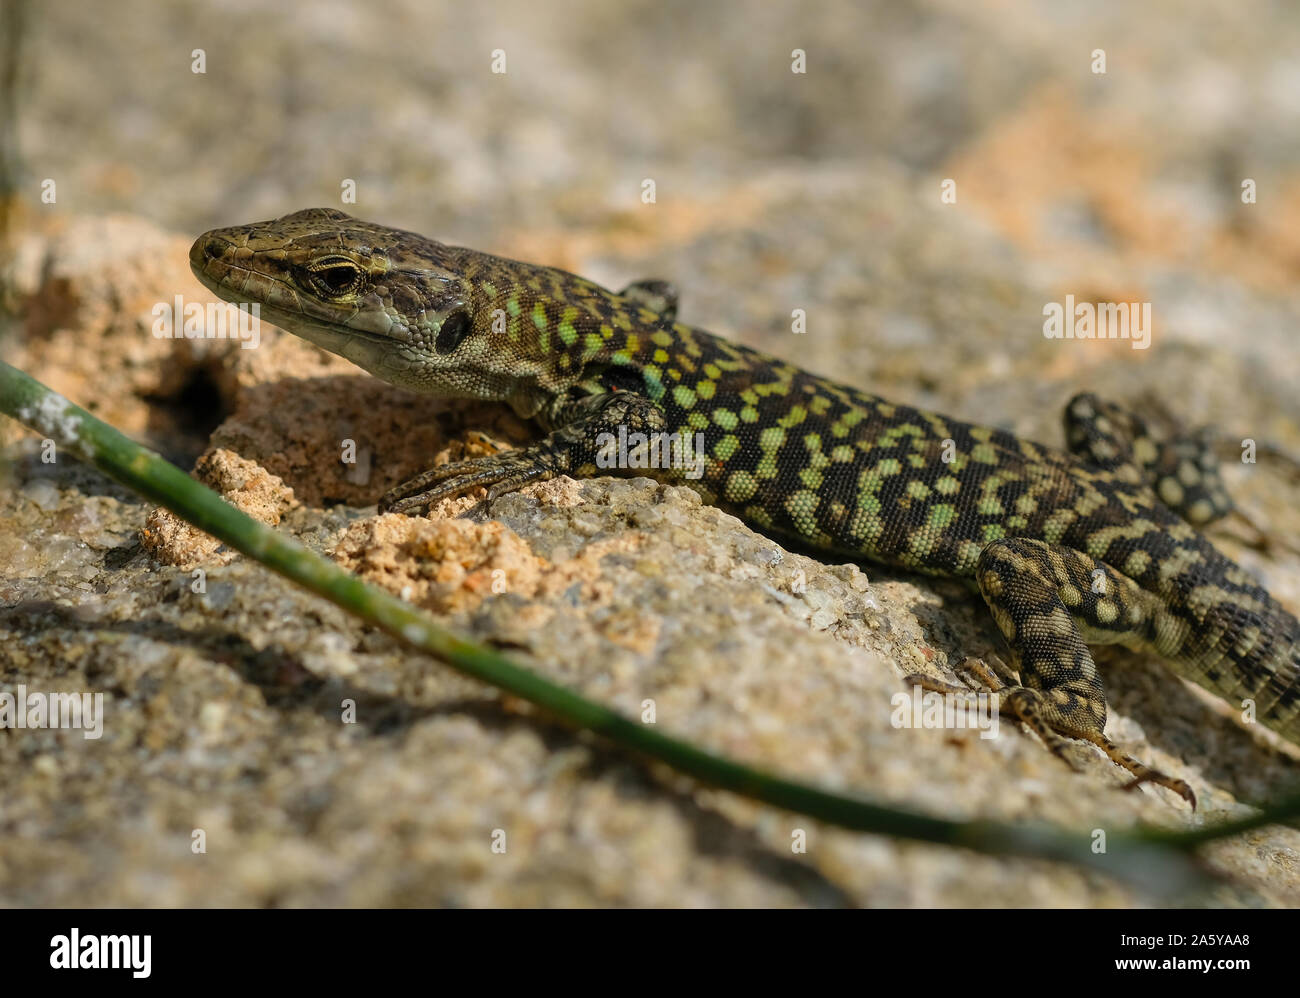 Lagarto salvaje piel verde descansando en el sol,animales reptiles Foto de stock